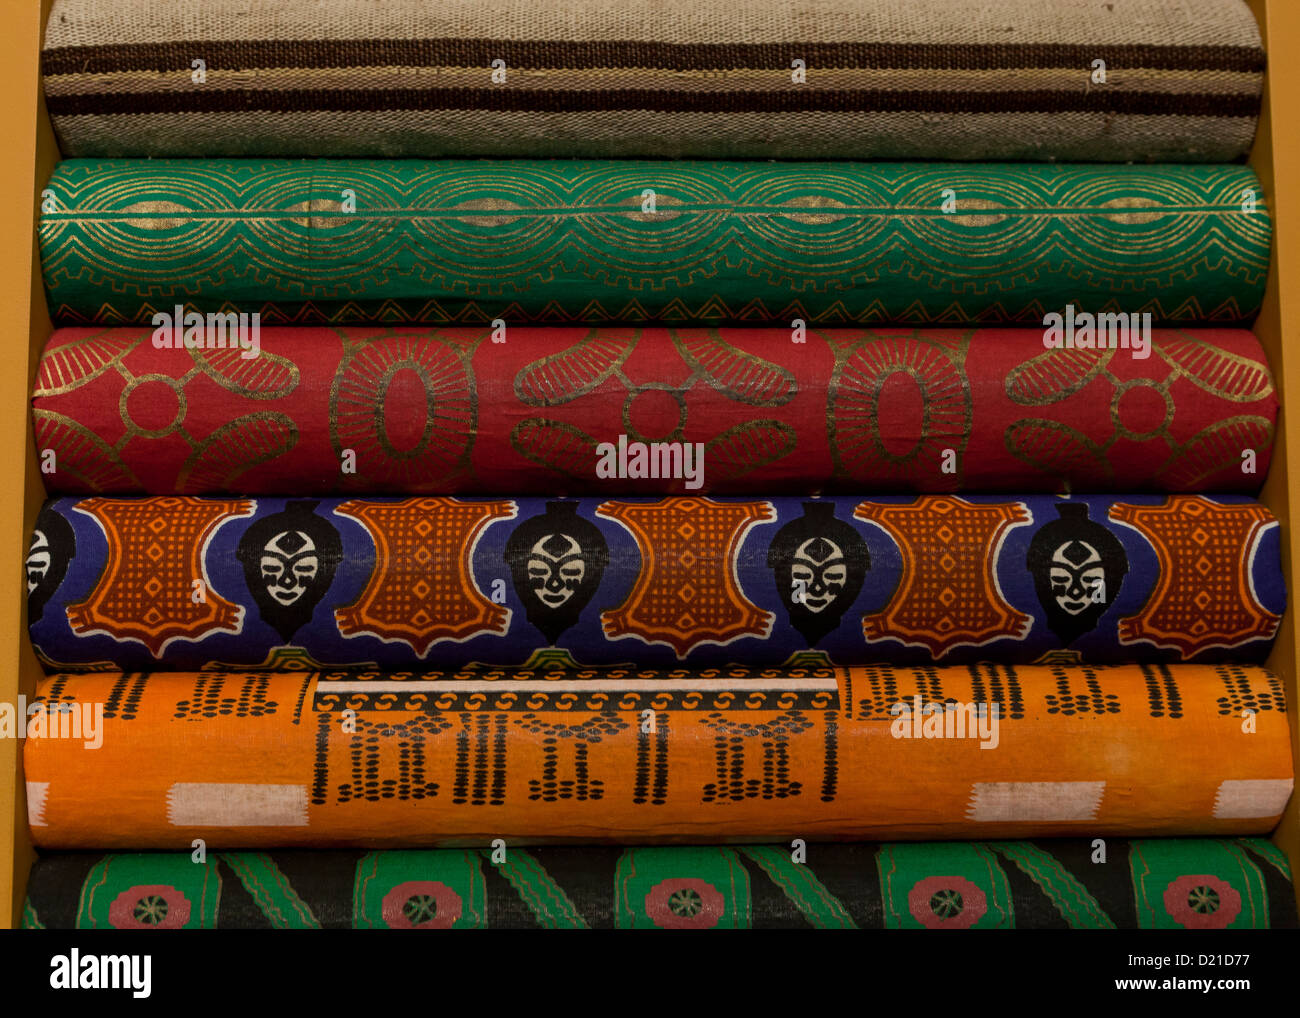 Linge textile africaine plié Banque D'Images